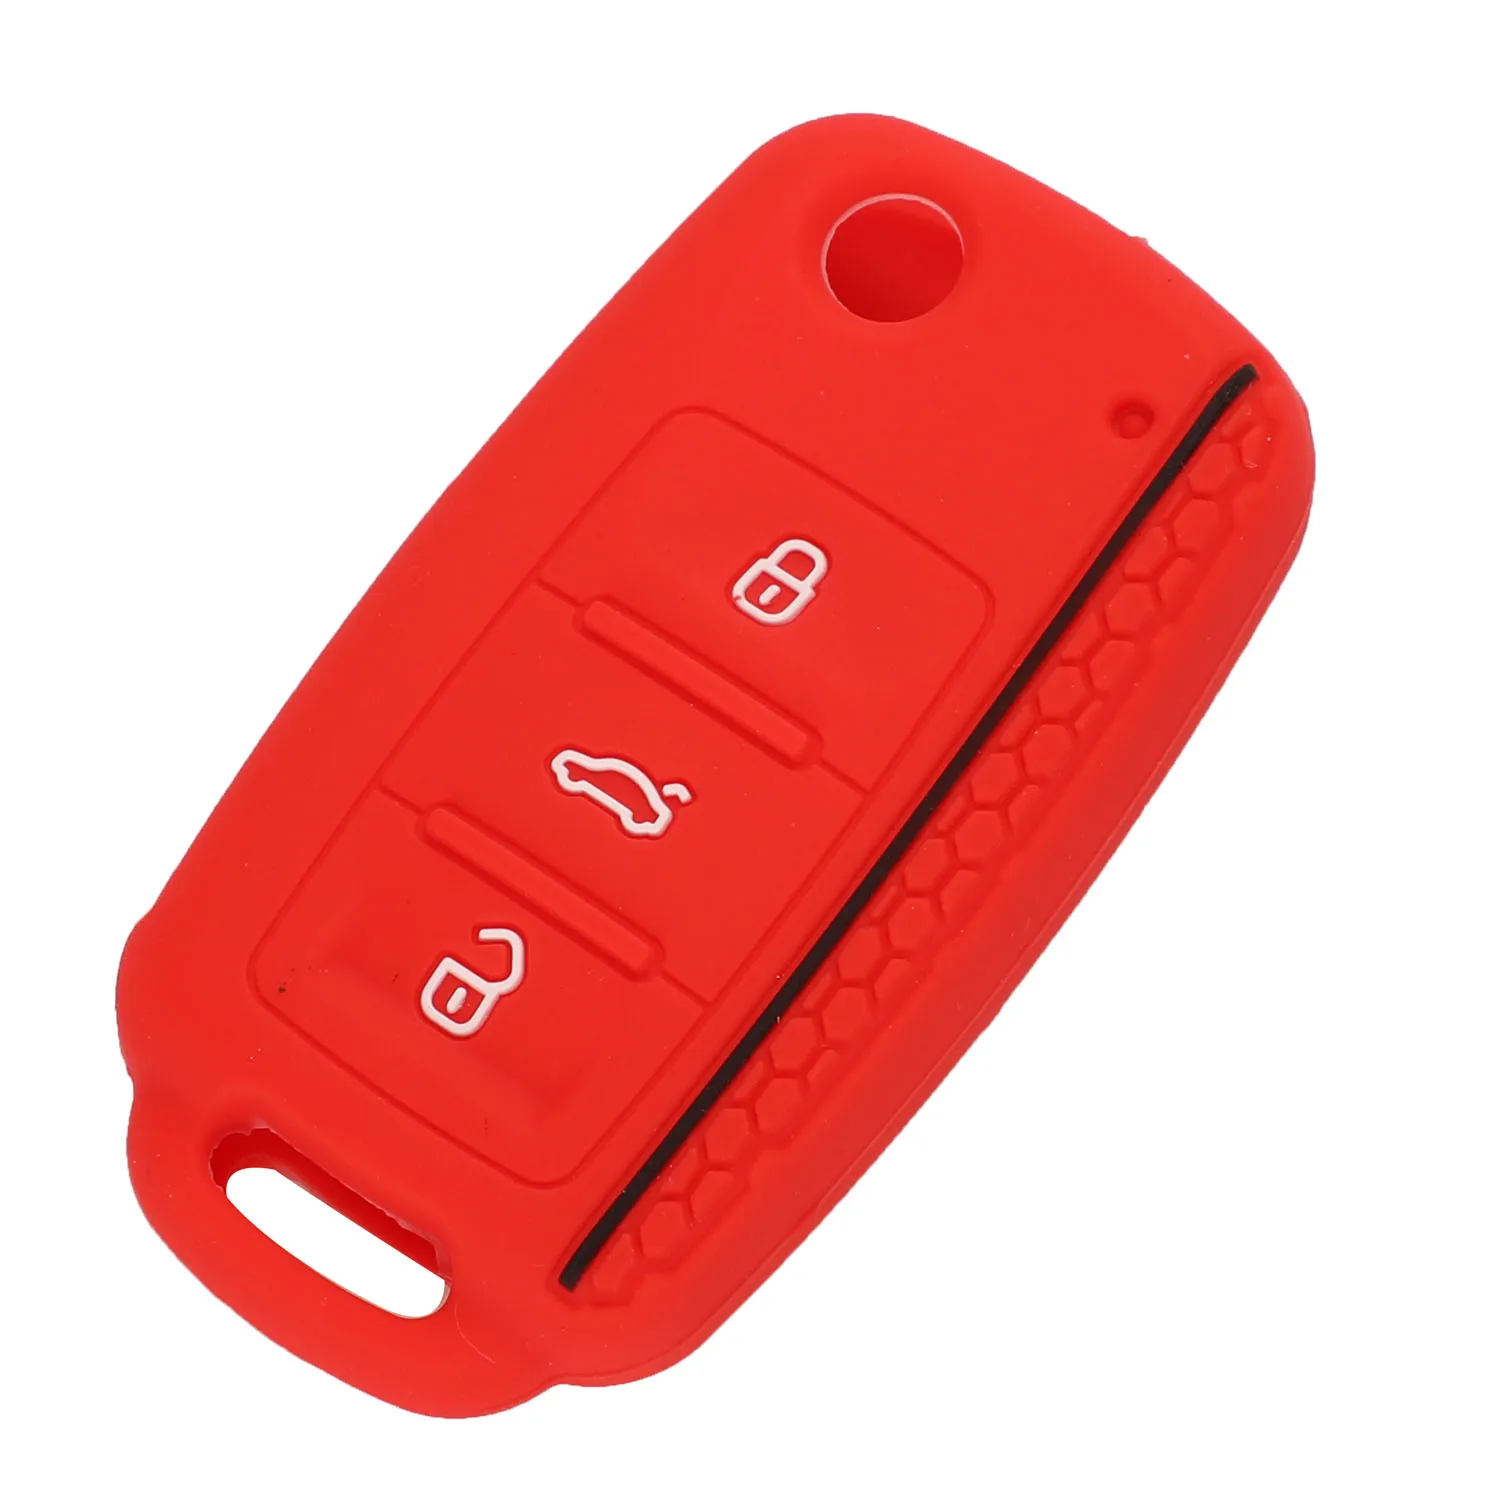 Jingyuqin 30X чехол для автомобильного ключа, чехол для VW Bora POLO GOLF Passat, силиконовый чехол для ключей, 3 кнопки дистанционного управления, автомобильный стиль - Название цвета: Красный